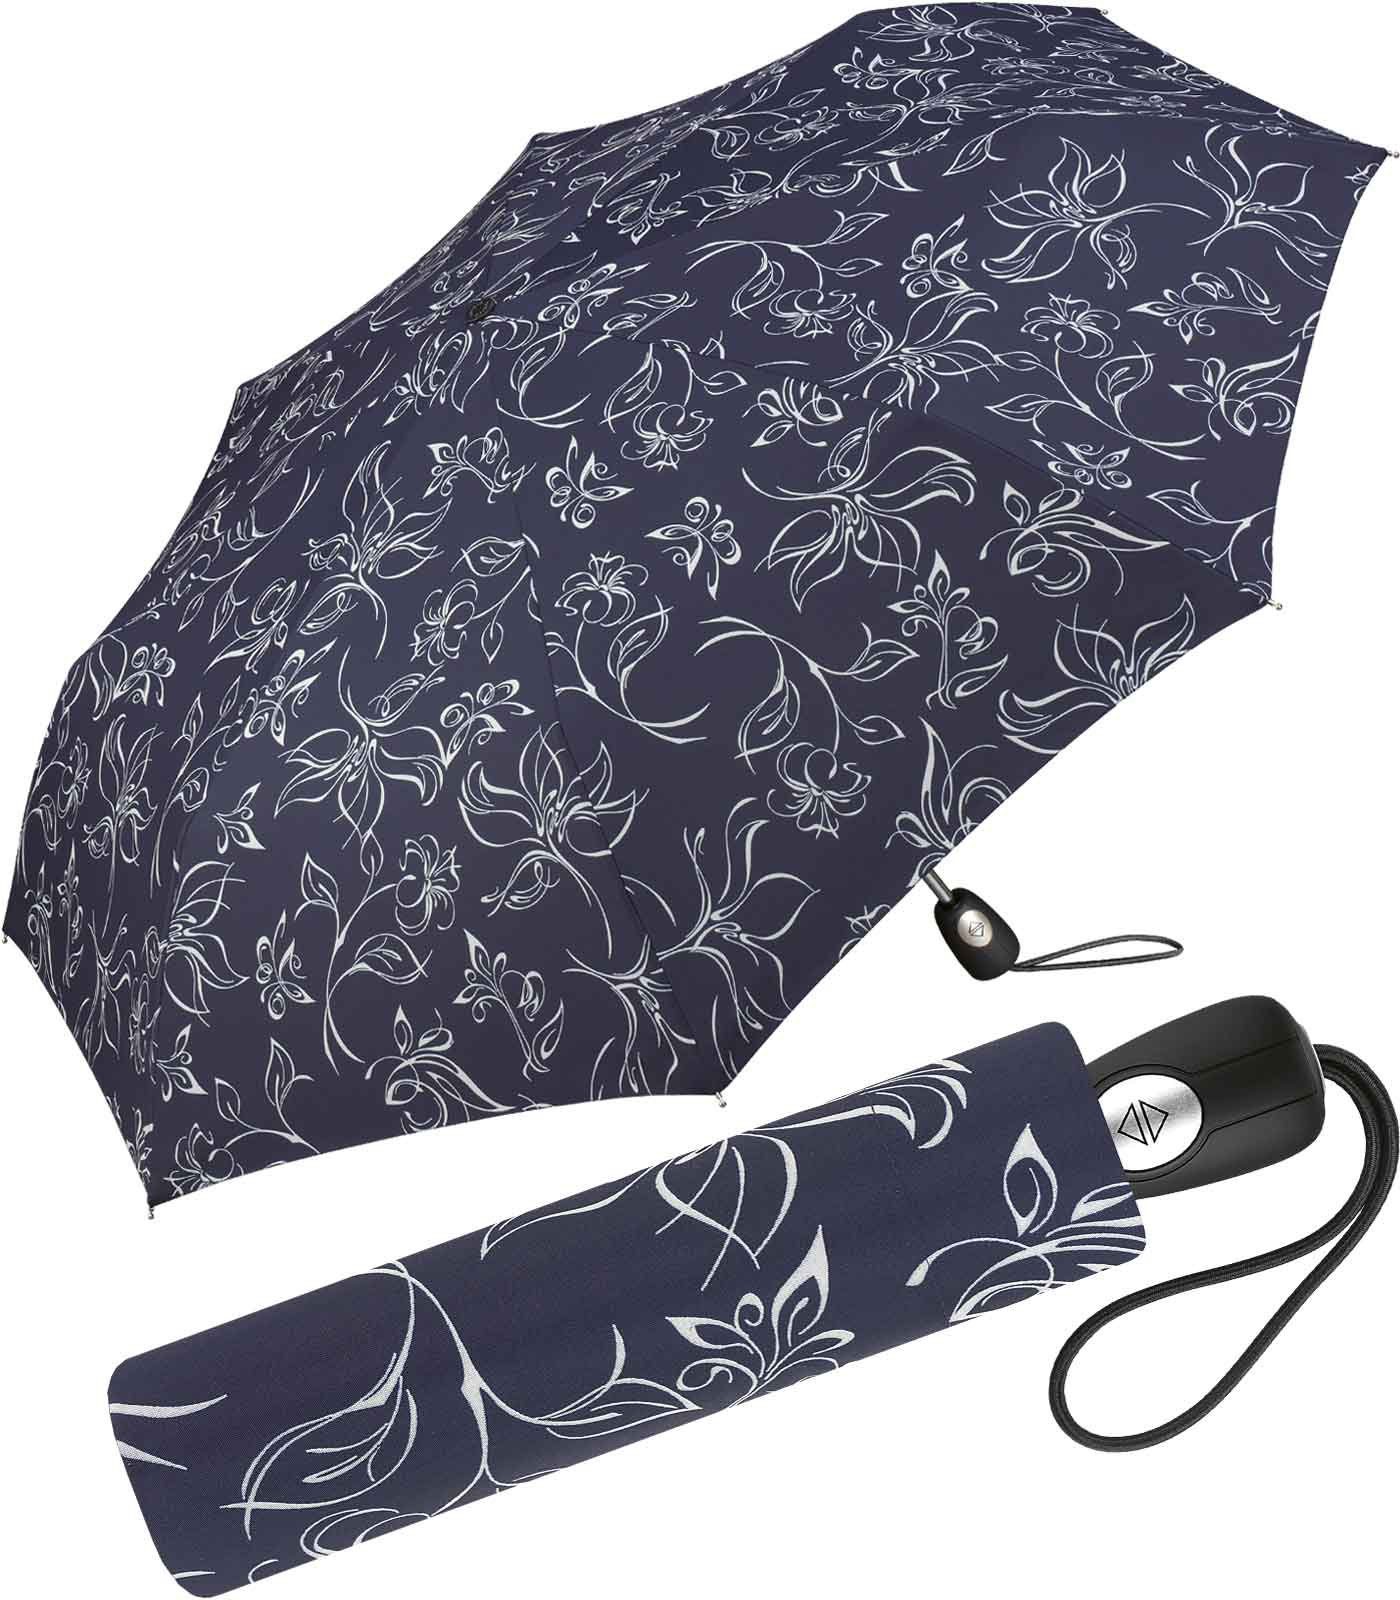 Pierre Cardin Taschenregenschirm schöner Damen-Regenschirm mit Auf-Zu-Automatik, mit wunderschönen Blumenskizzen weiß-dunkelblau